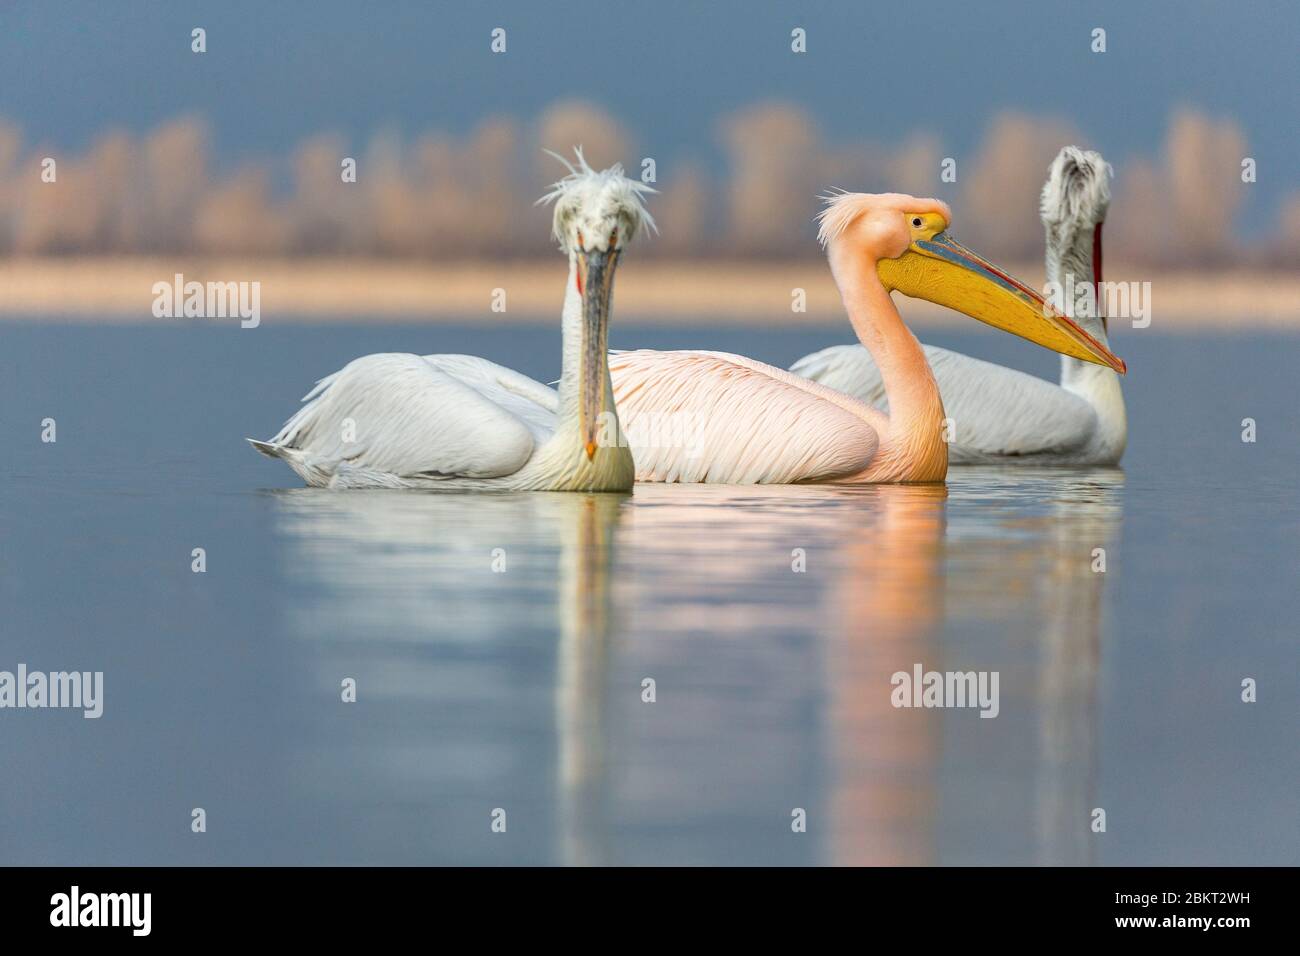 Greece, Macedonia, Kerkini lake, Dalmatian pelican (Pelecanus crispus) and white pelican (Pelecanus onocrotalus) Stock Photo